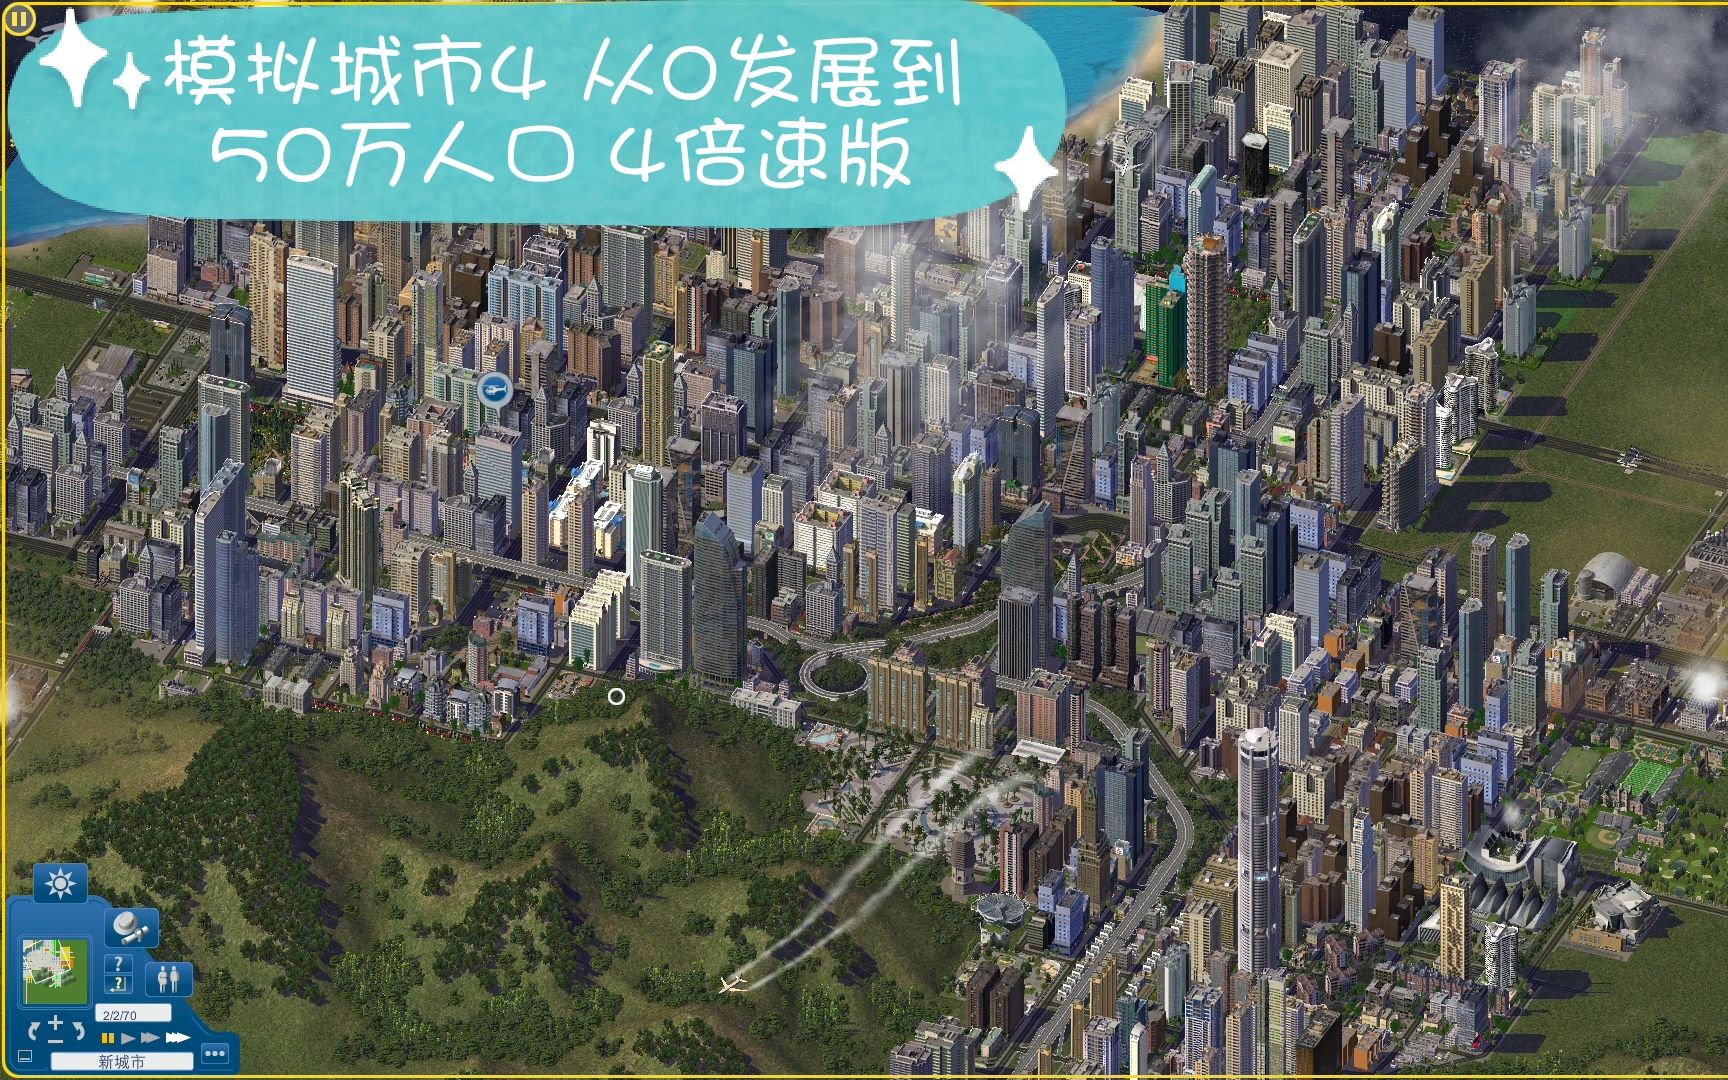 小米手机模拟城市类游戏_小米游戏模拟器手机版_模拟小米类城市手机游戏有哪些